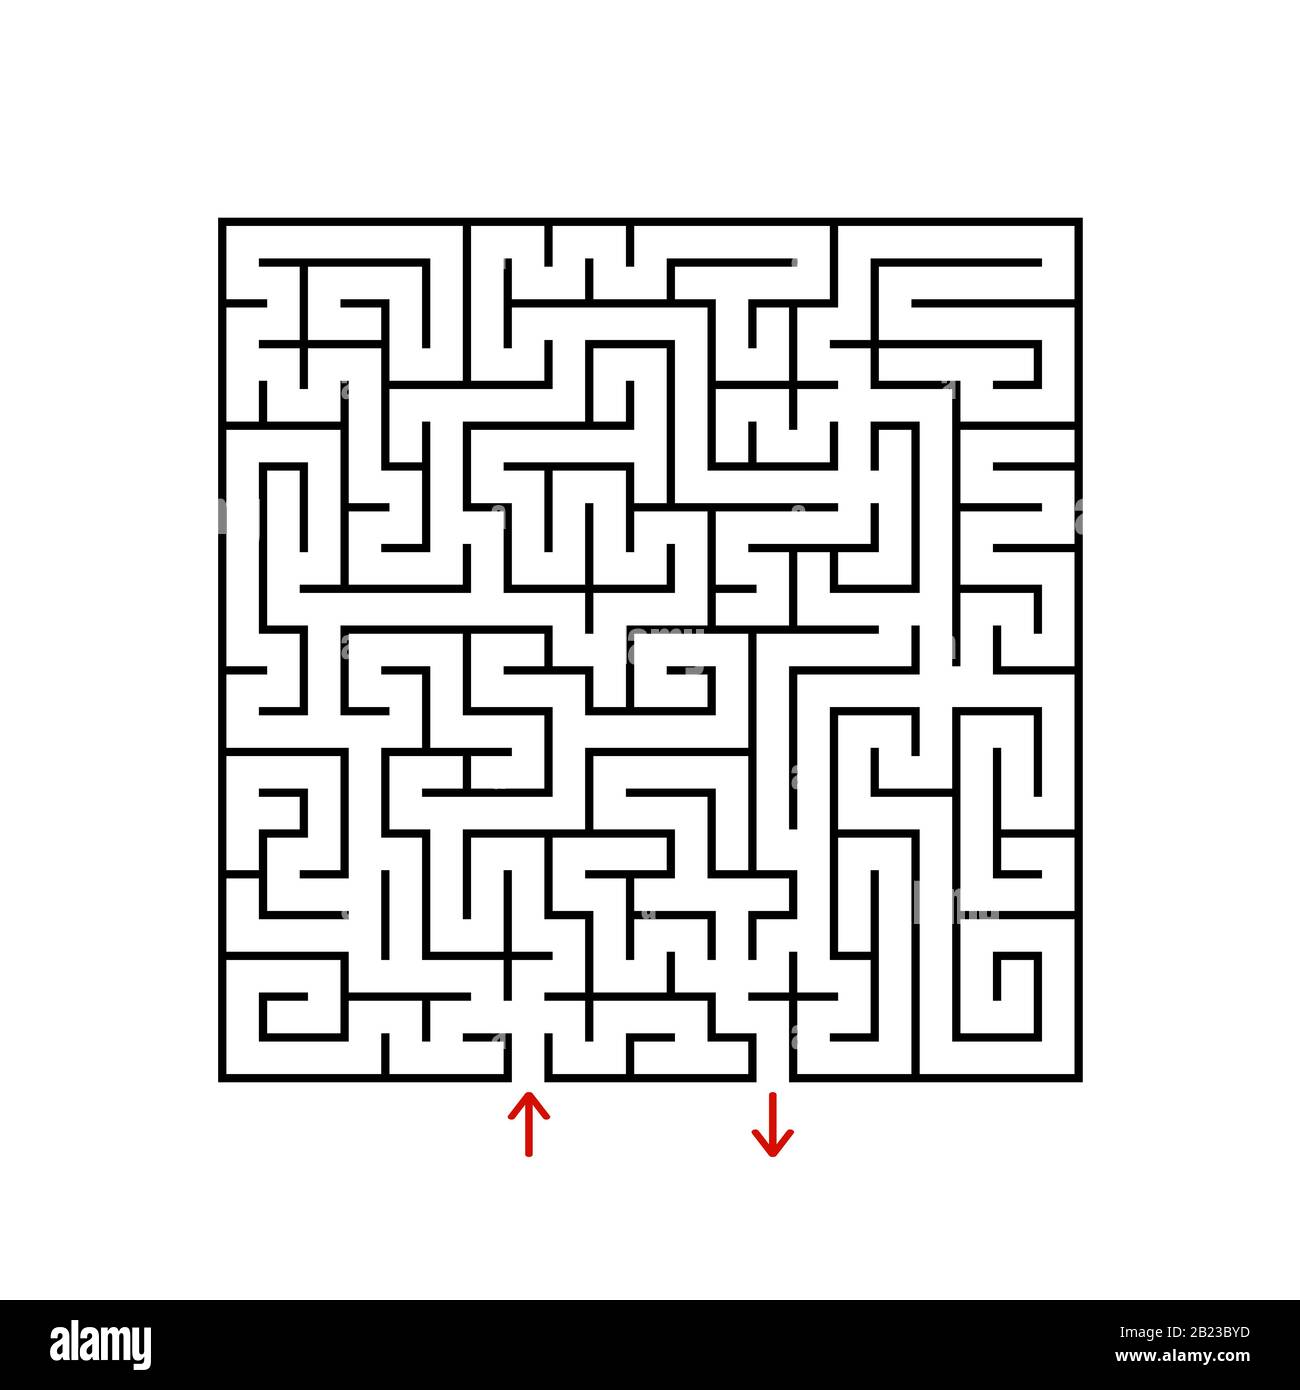 Schwarzes quadratisches Labyrinth mit ein- und Ausgang. Ein Spiel für Kinder und Erwachsene. Einfache flache Vektorgrafiken isoliert auf weißem Hintergrund Stock Vektor